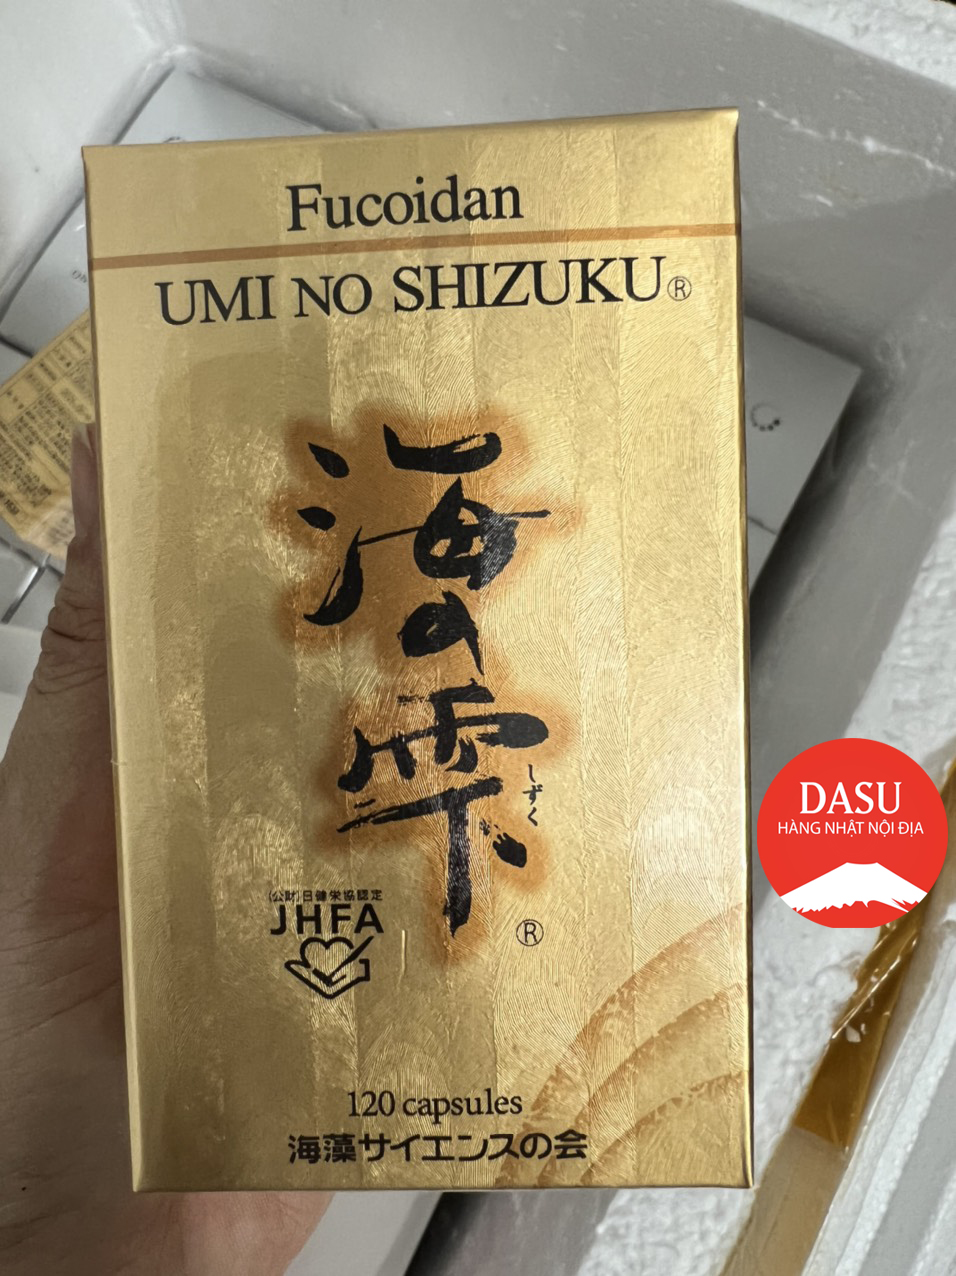 Umi No Shizuku Fucoidan Nhật Bản Fucoidan Vàng